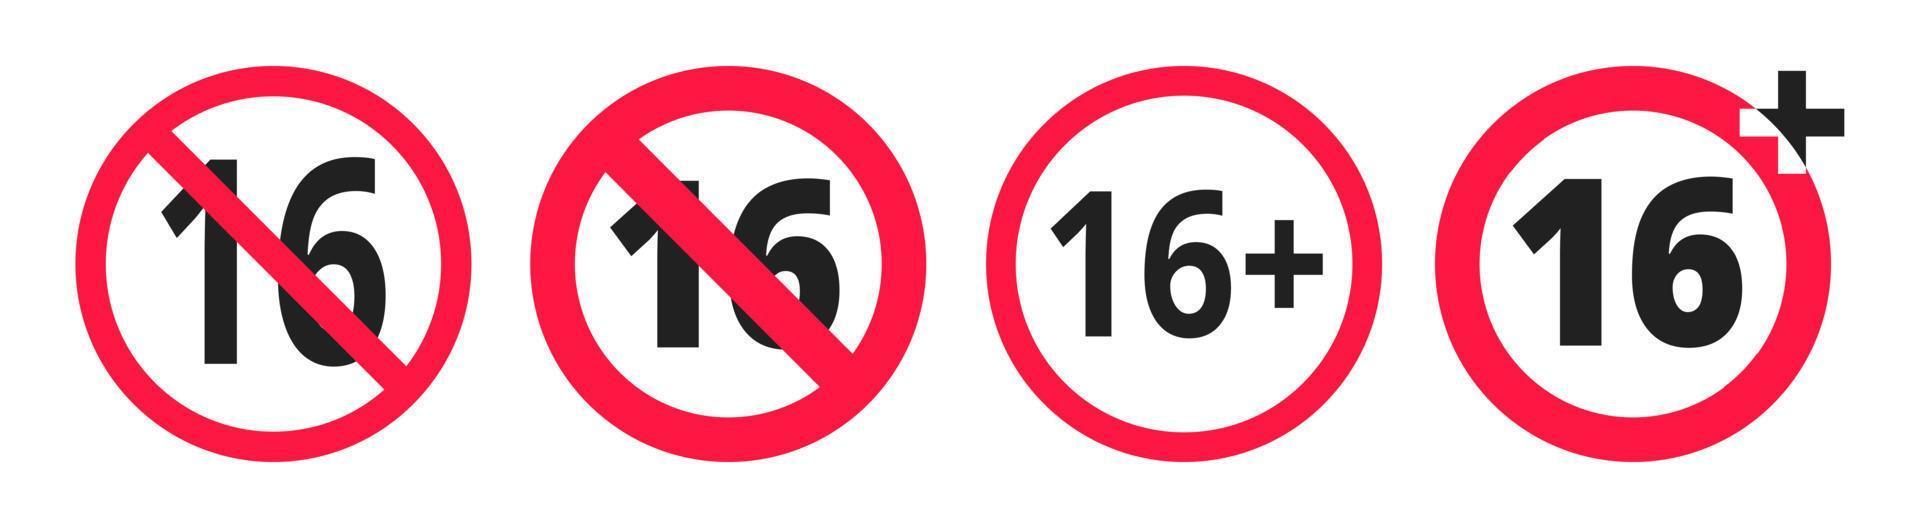 illustrazione vettoriale del segno dell'icona rotonda vietata sotto i 16 anni.